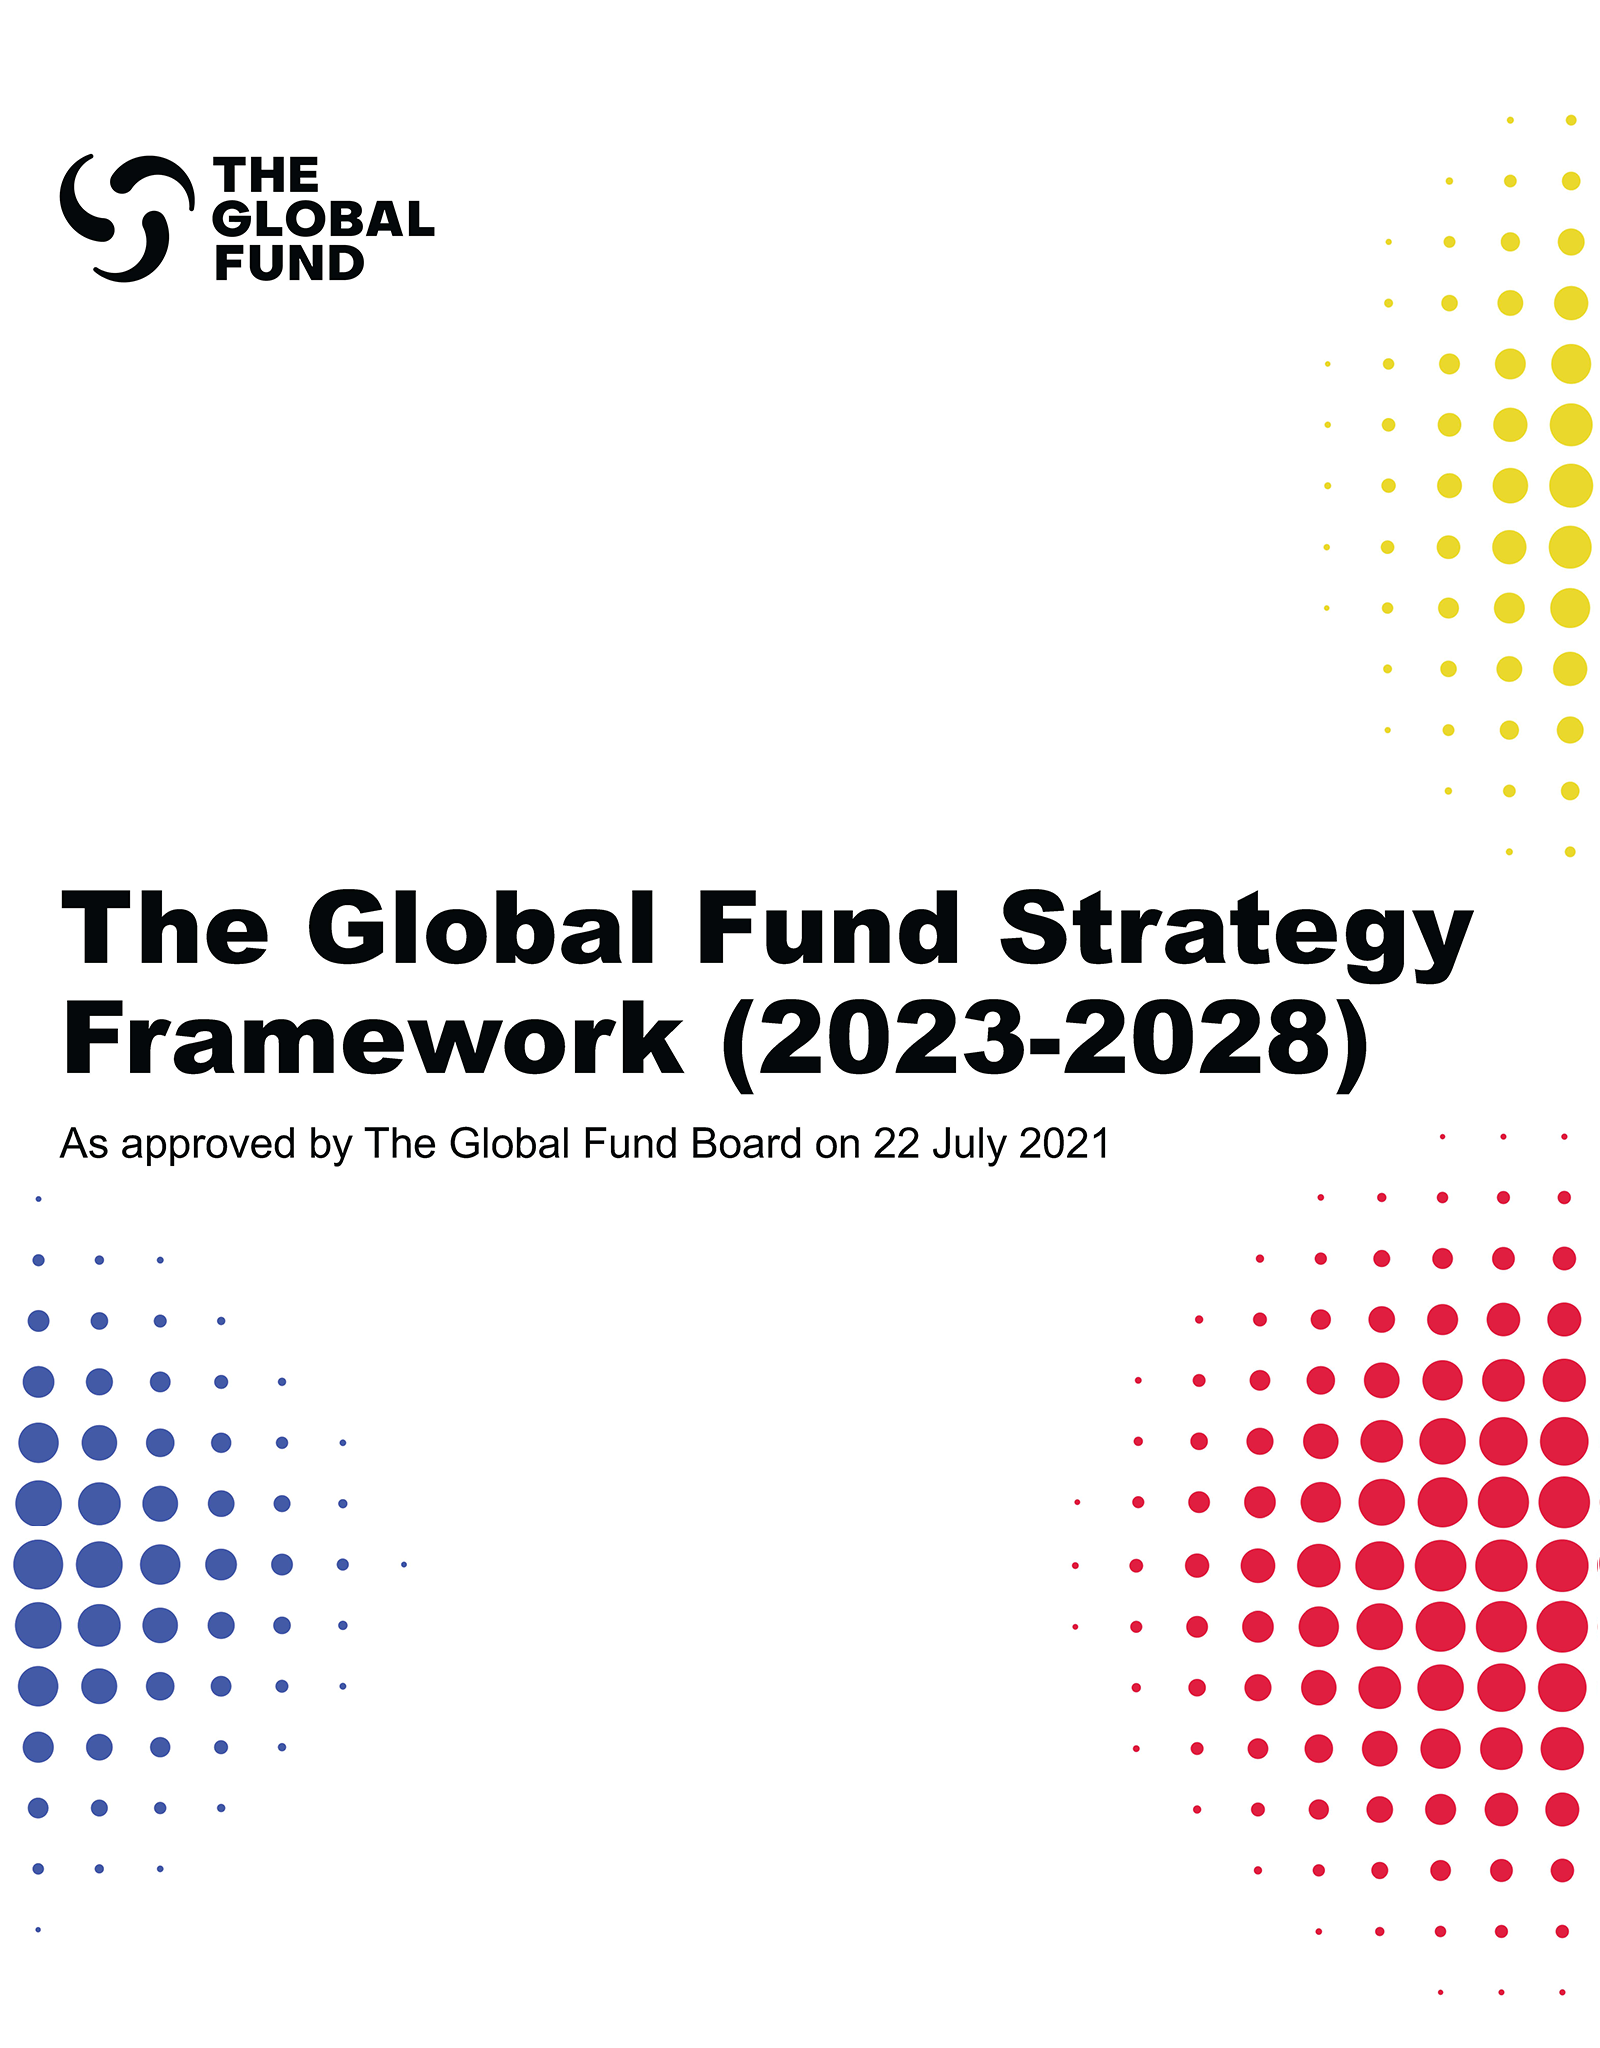 El marco estratégico del Fondo Mundial 2023-2028